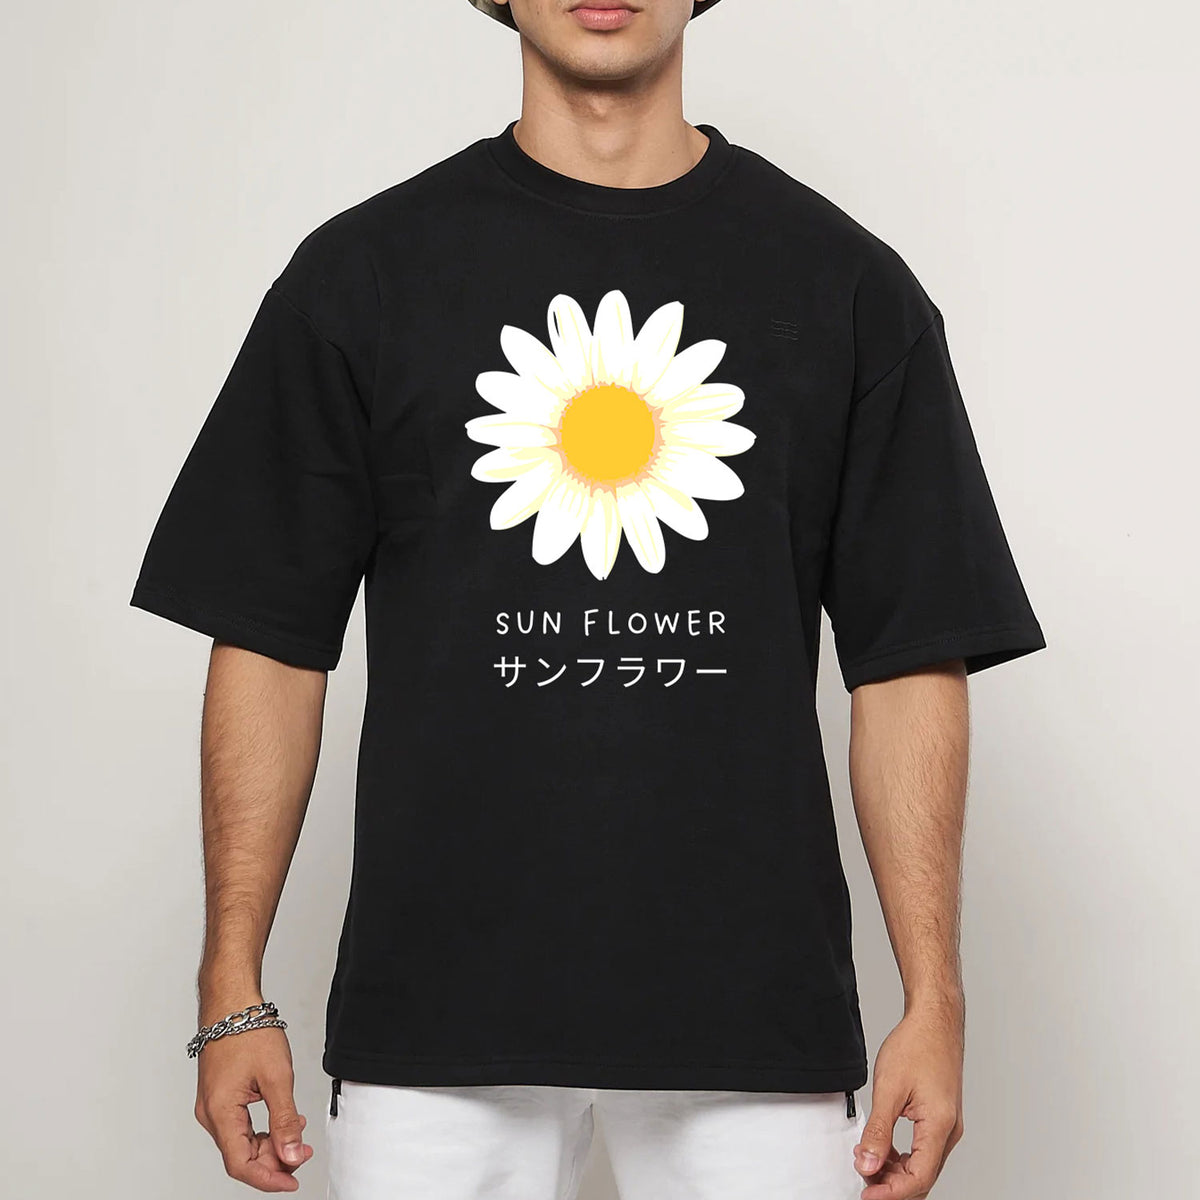 Men's Black Sun Flower Printed Oversized T-shirt